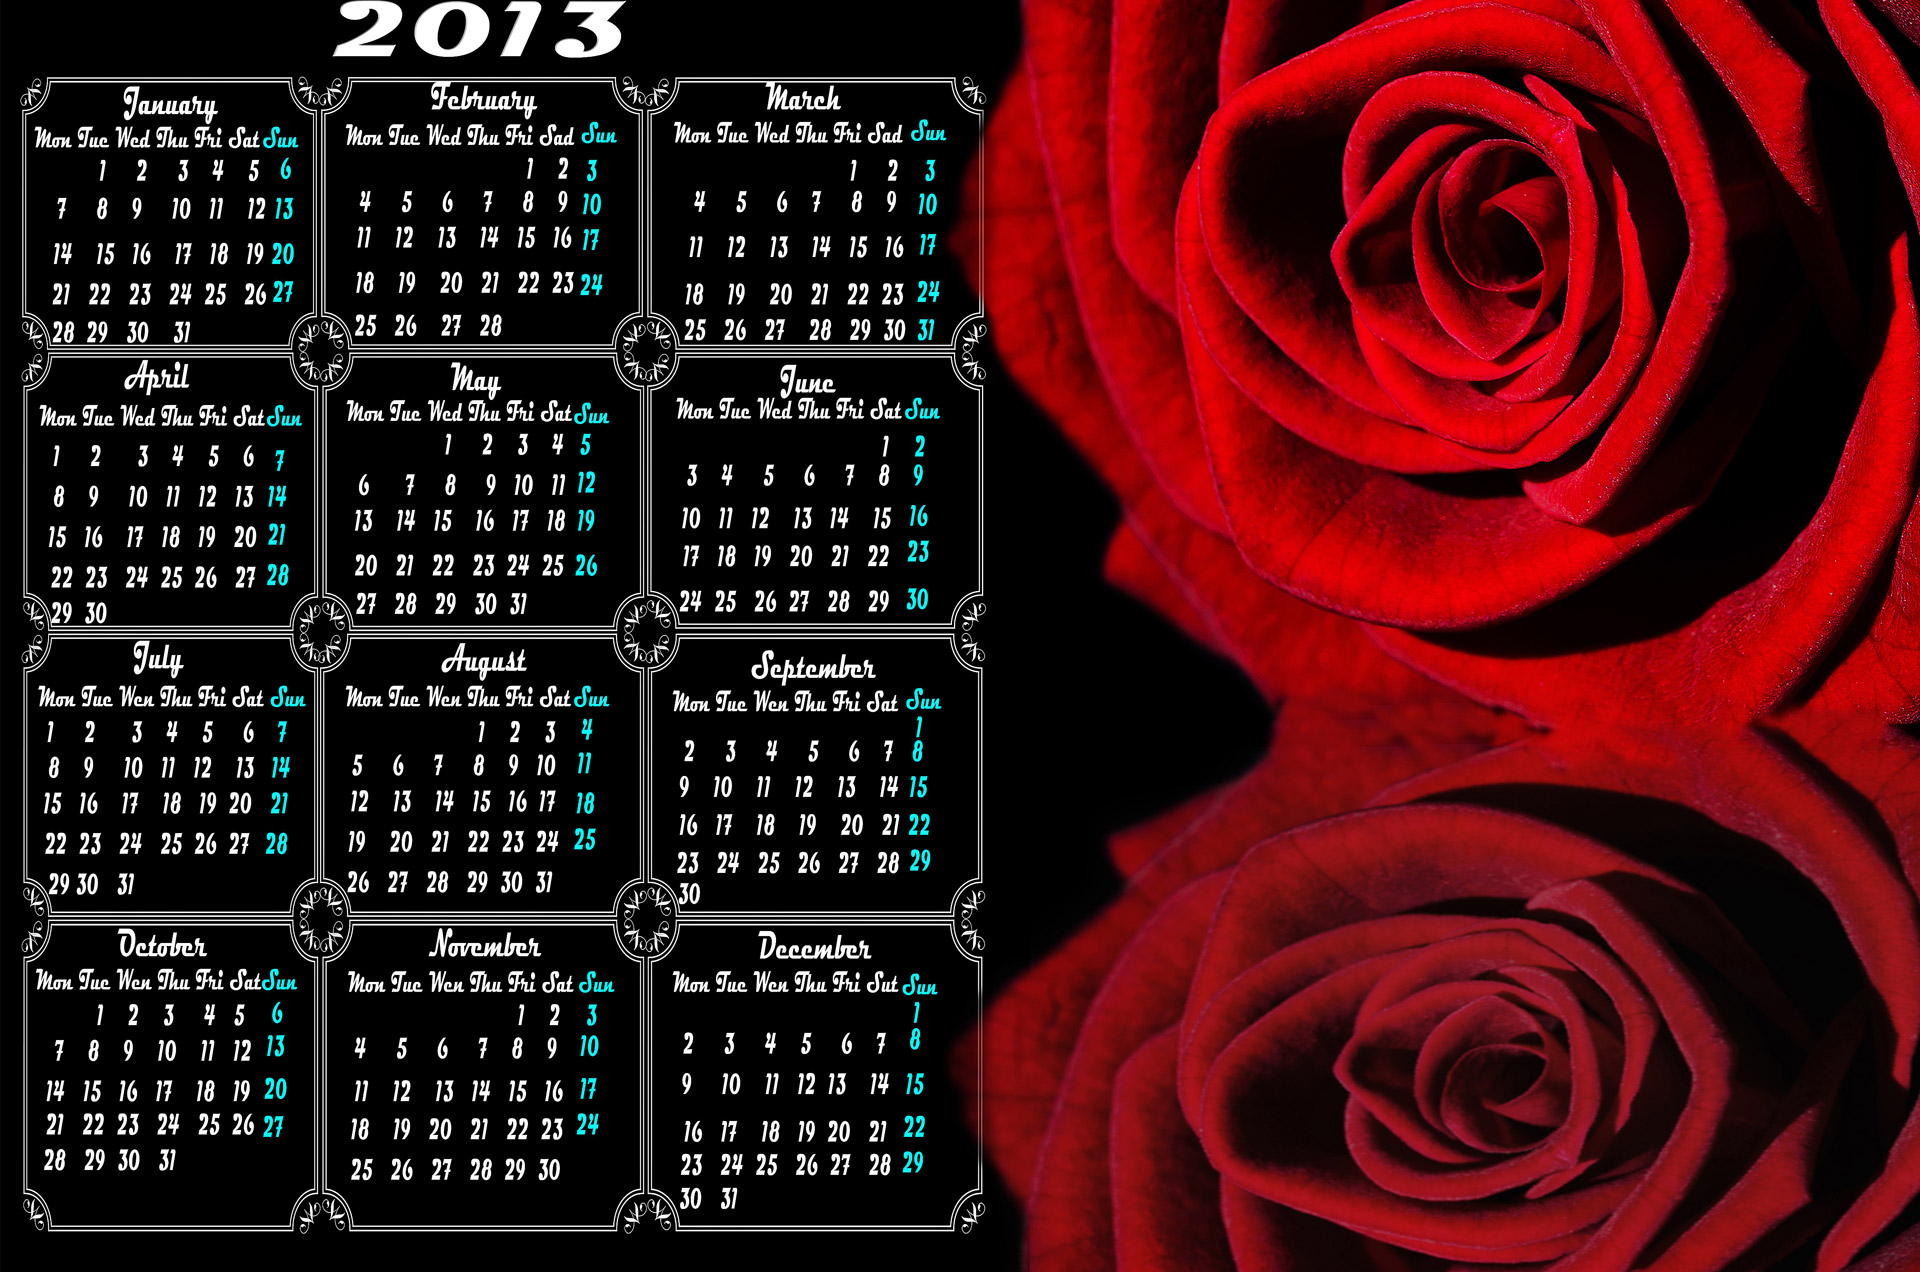 Kalendorius,  2013,  Rožė,  Raudona,  Sausis,  Vasaris,  Kovas,  Balandis,  Gegužė,  Birželis